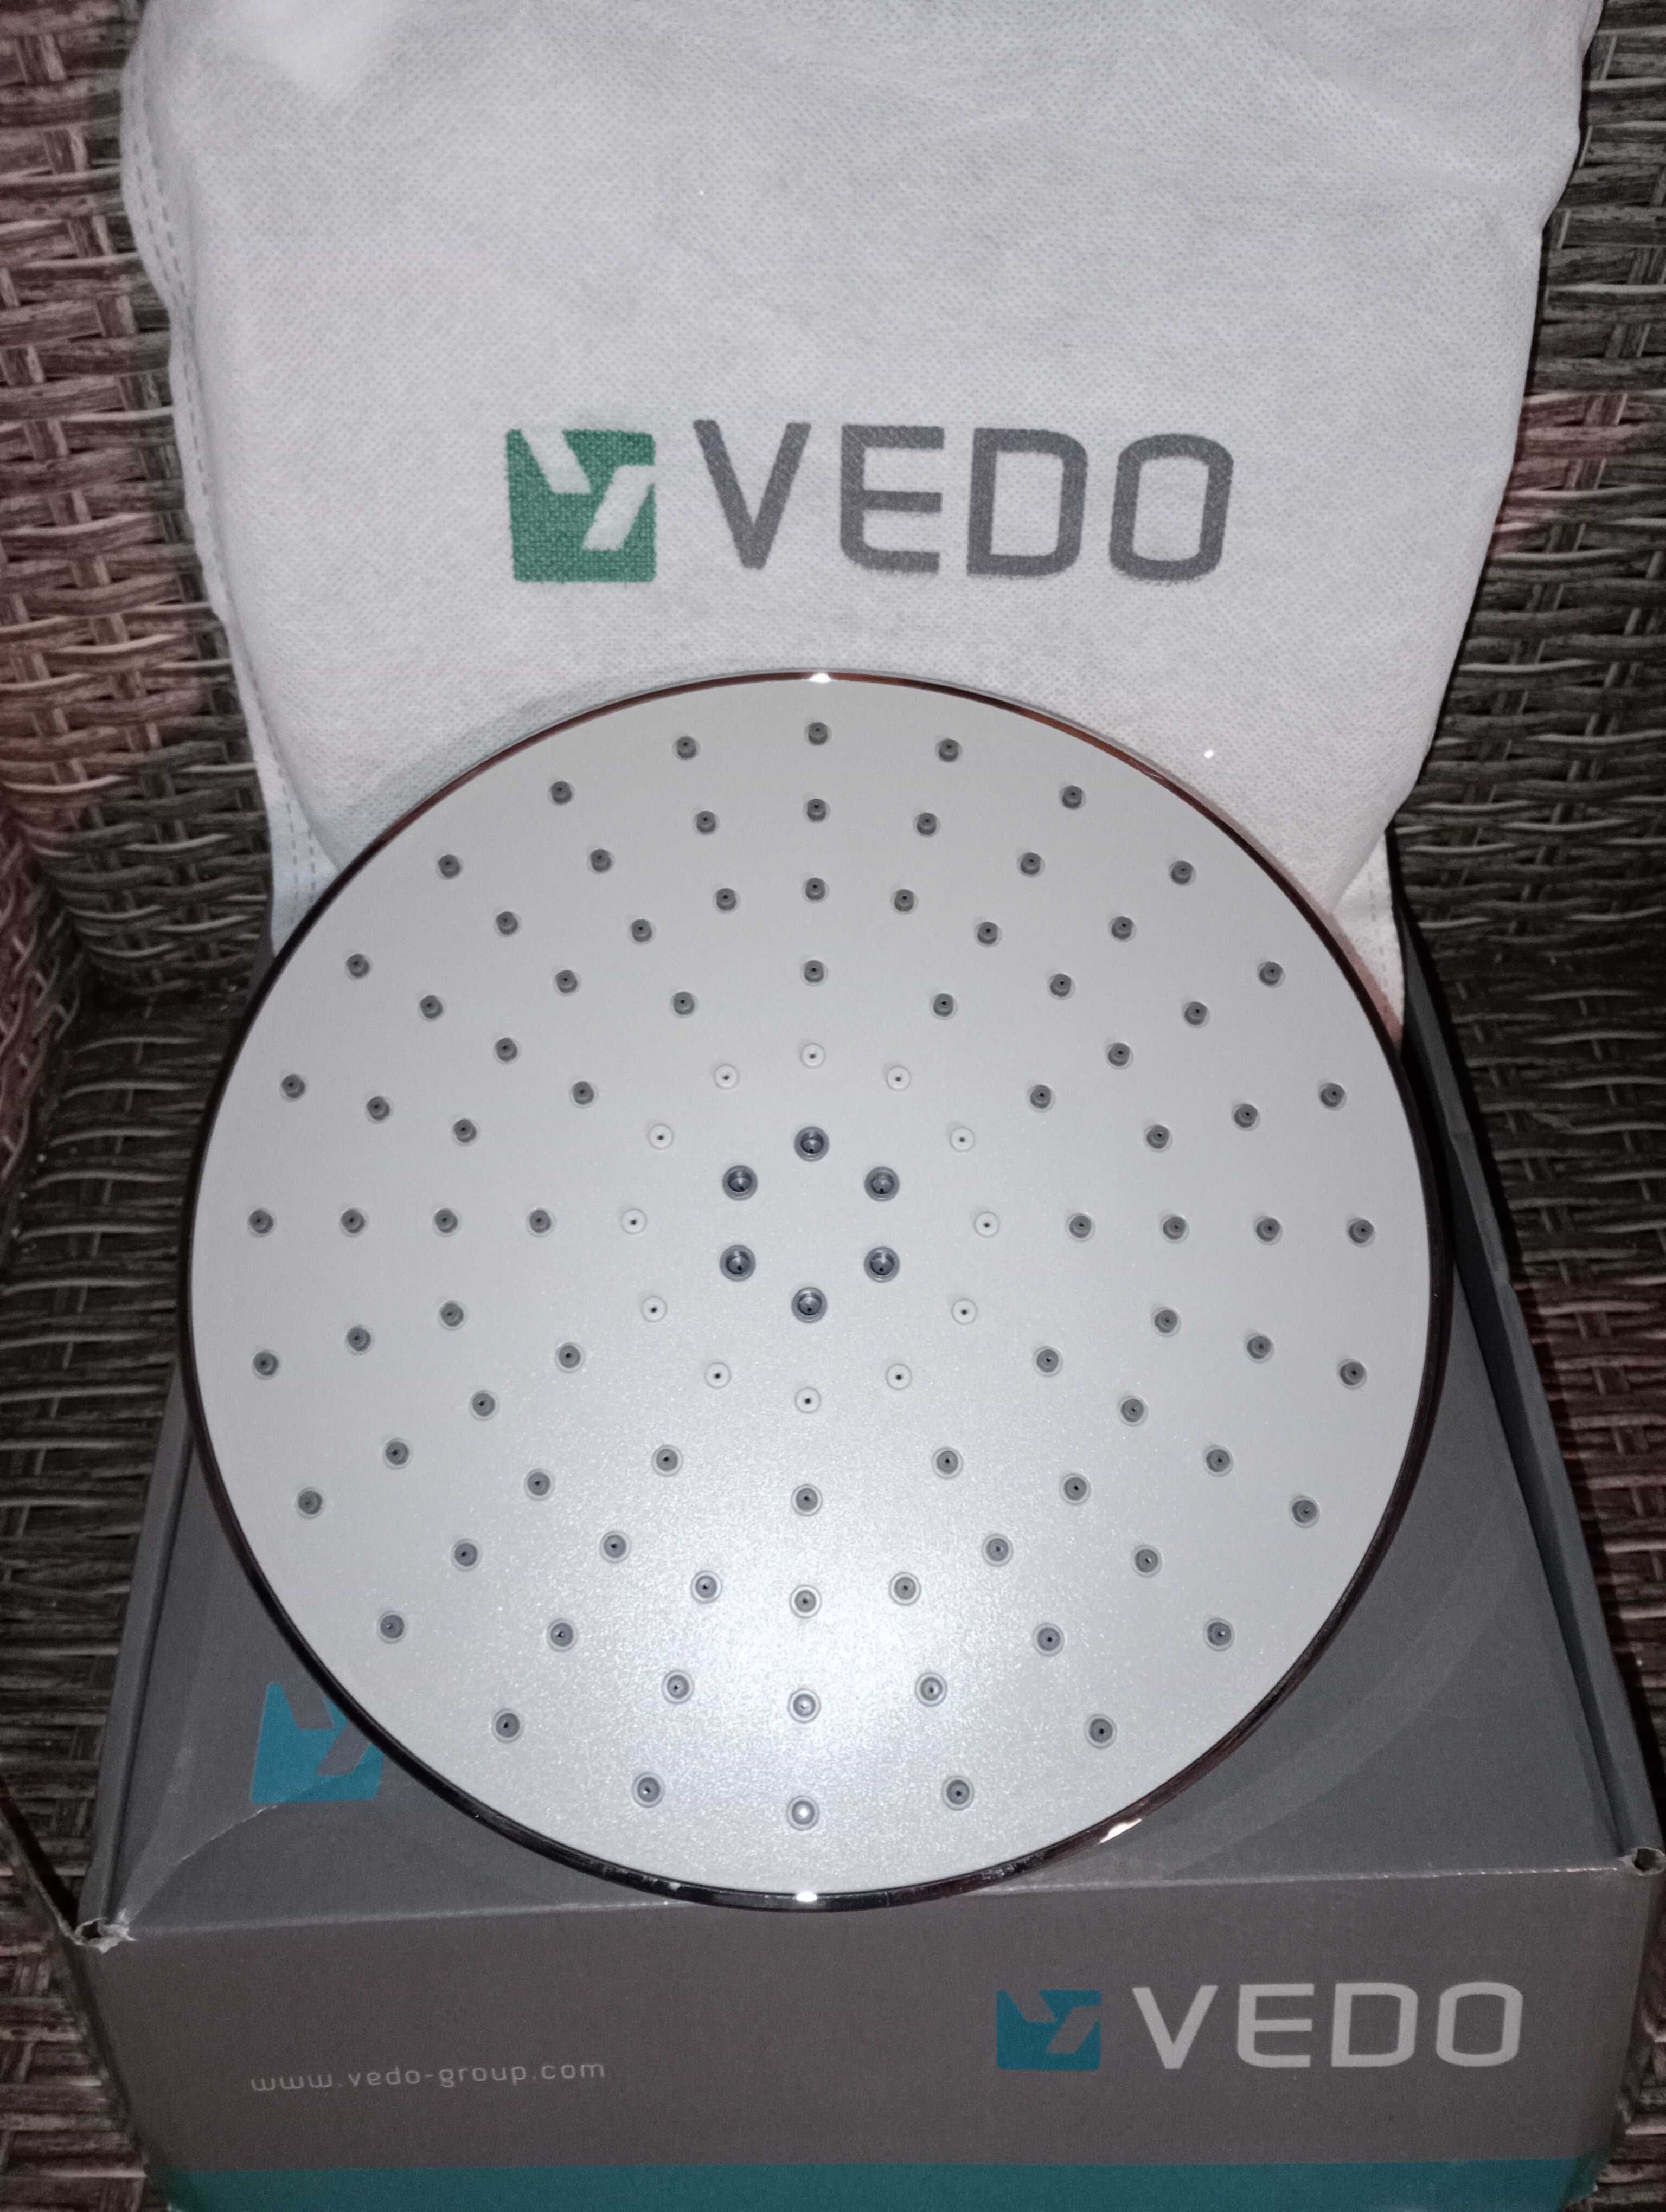 Vedo Deszczownica okrągła 23 cm chrom VSN8023/CH